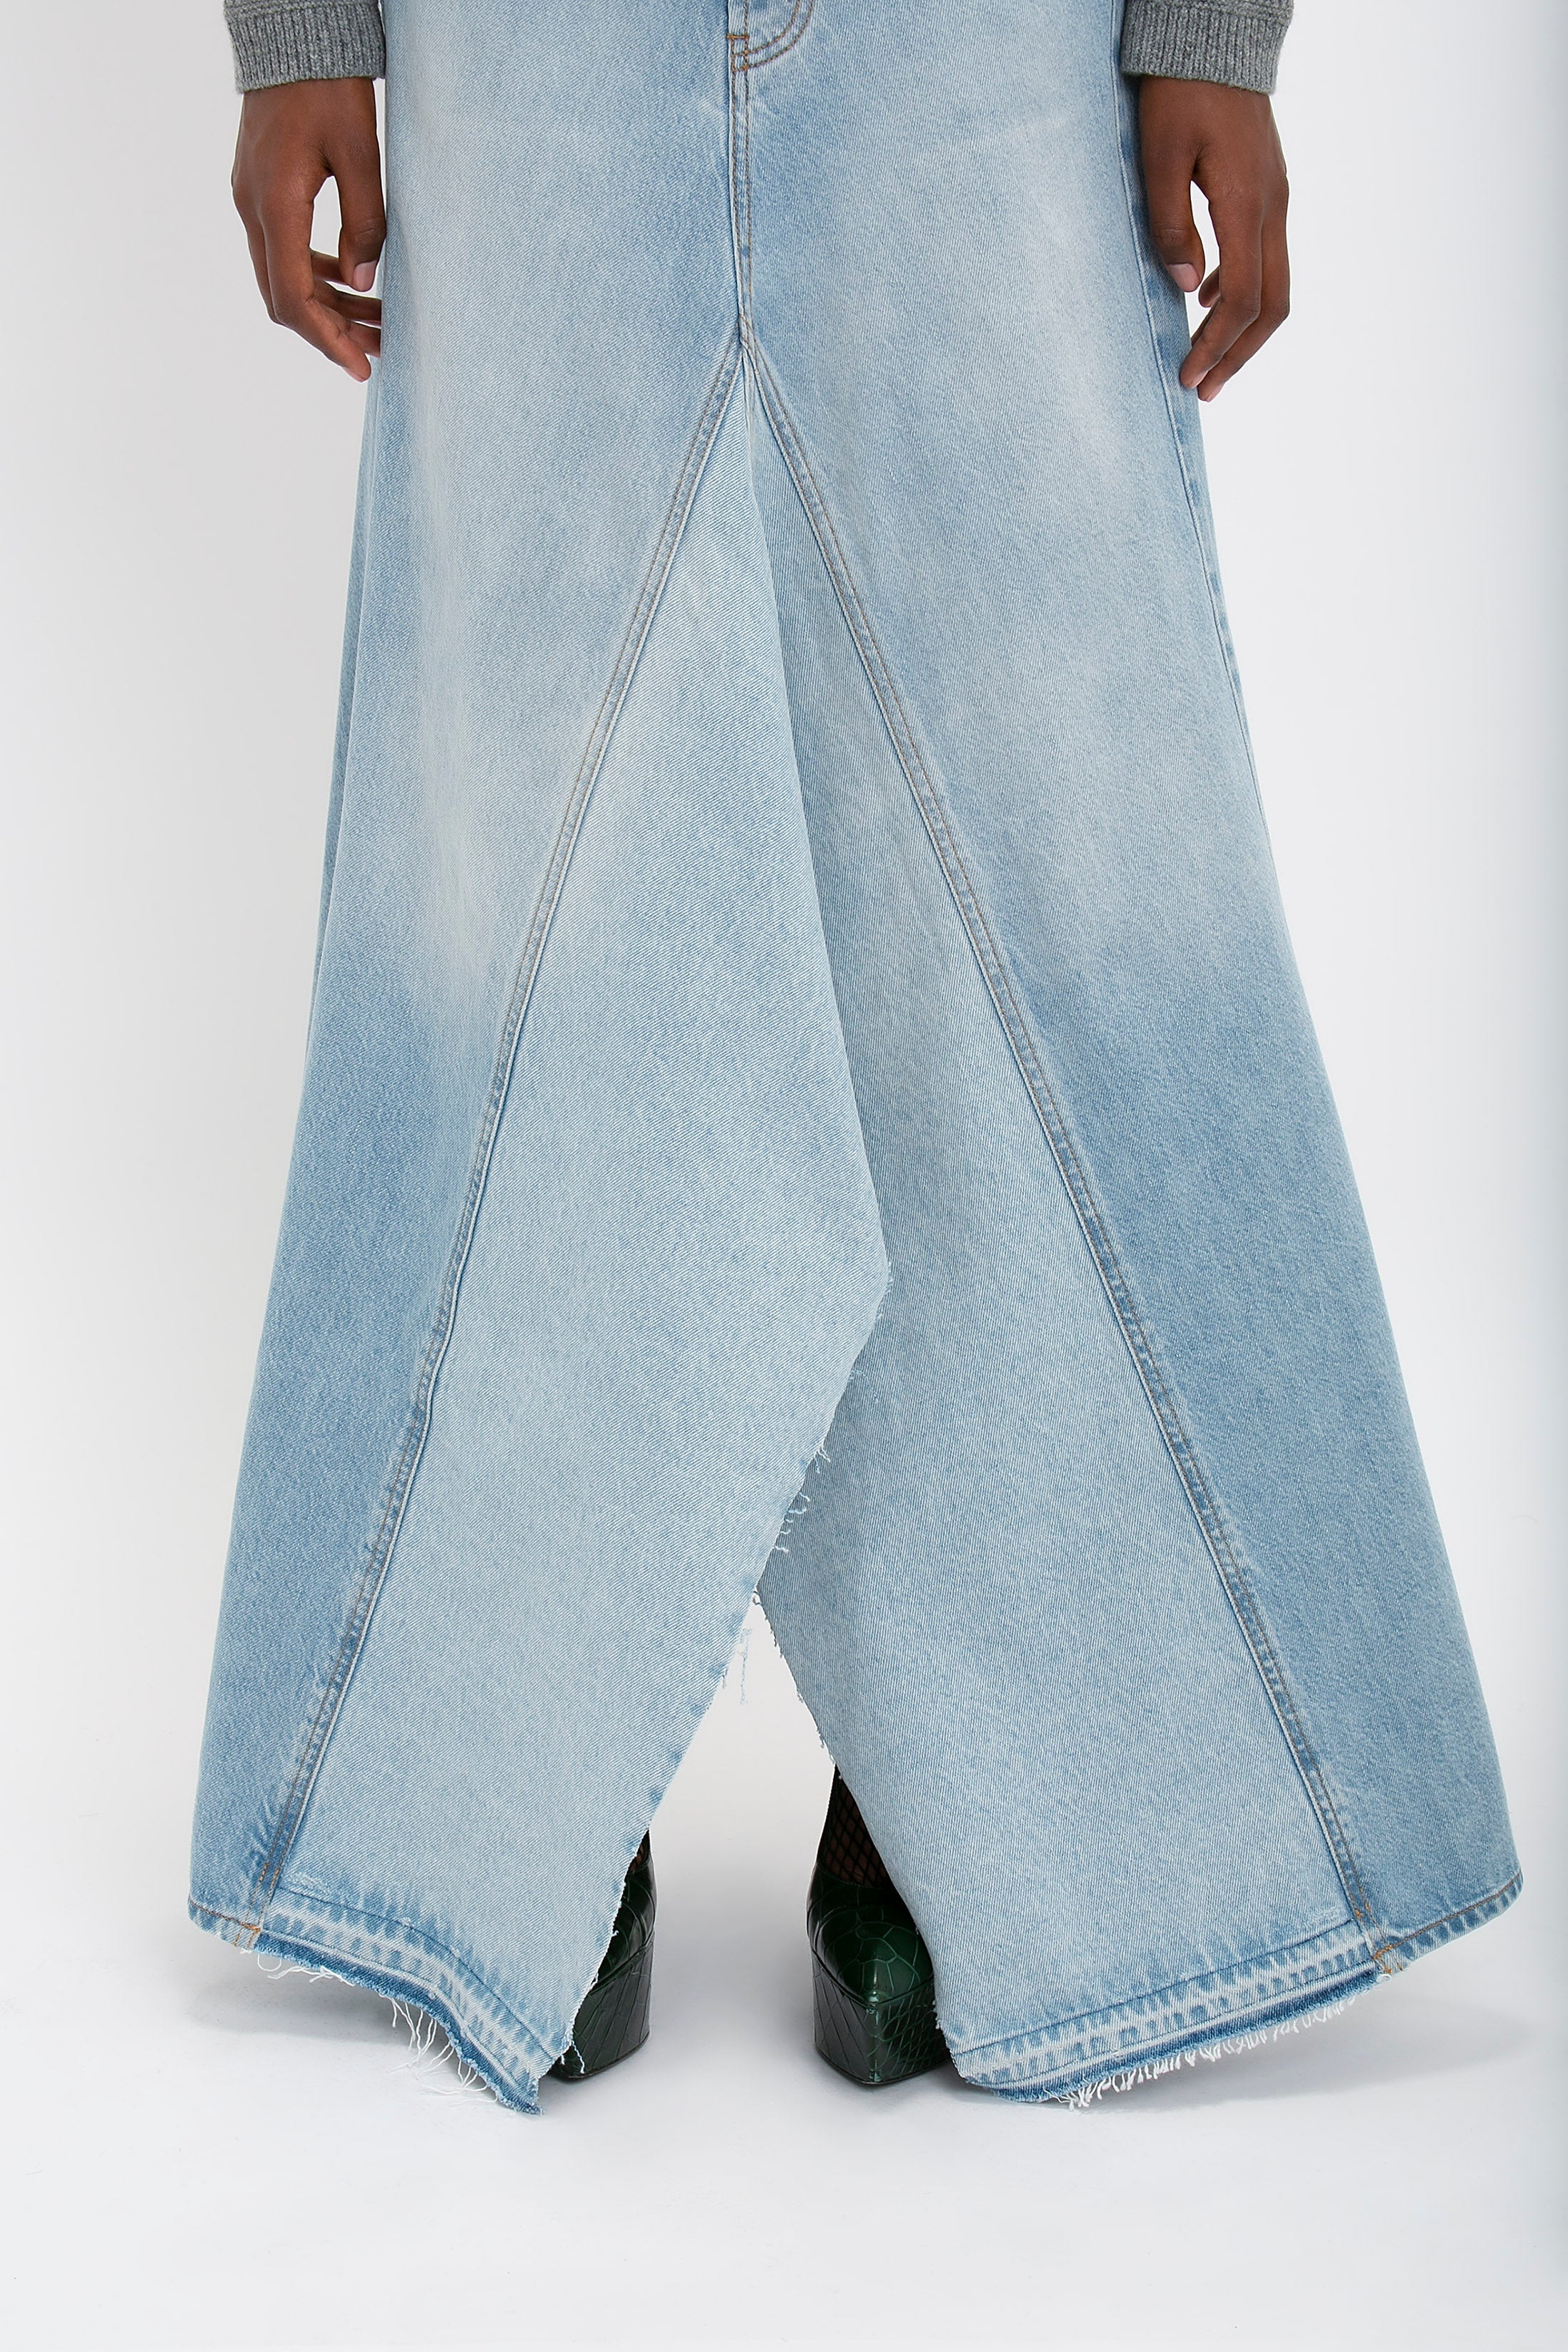 Maxi Godet Denim Skirt In Light Blue Wash - 6